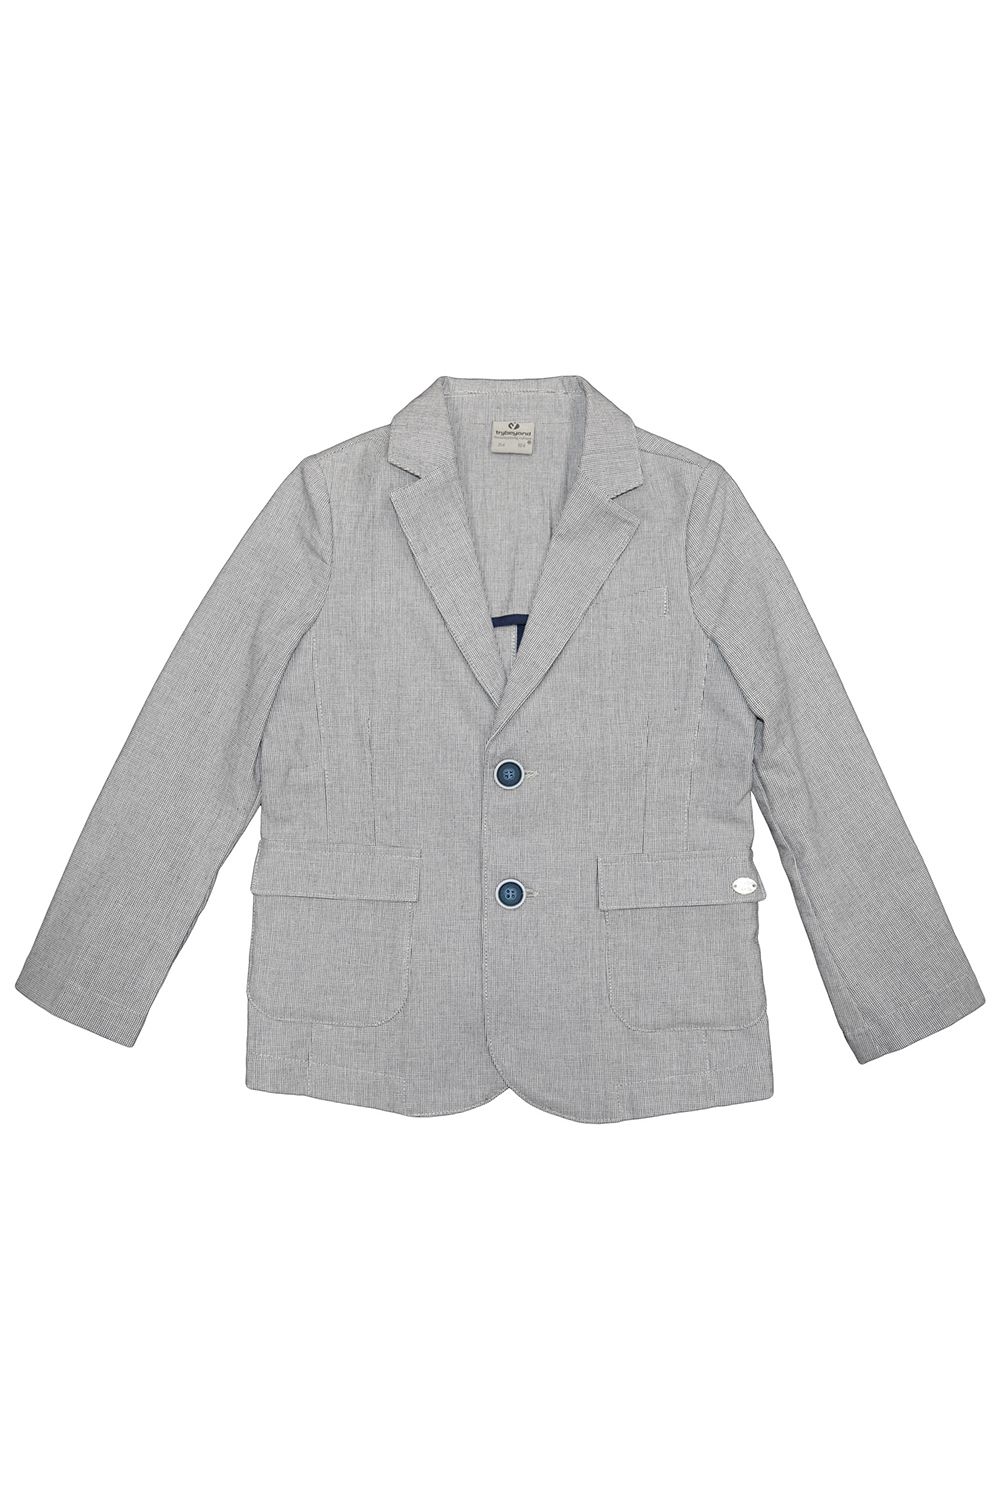 Пиджак Trybiritaly, размер 116, цвет серый